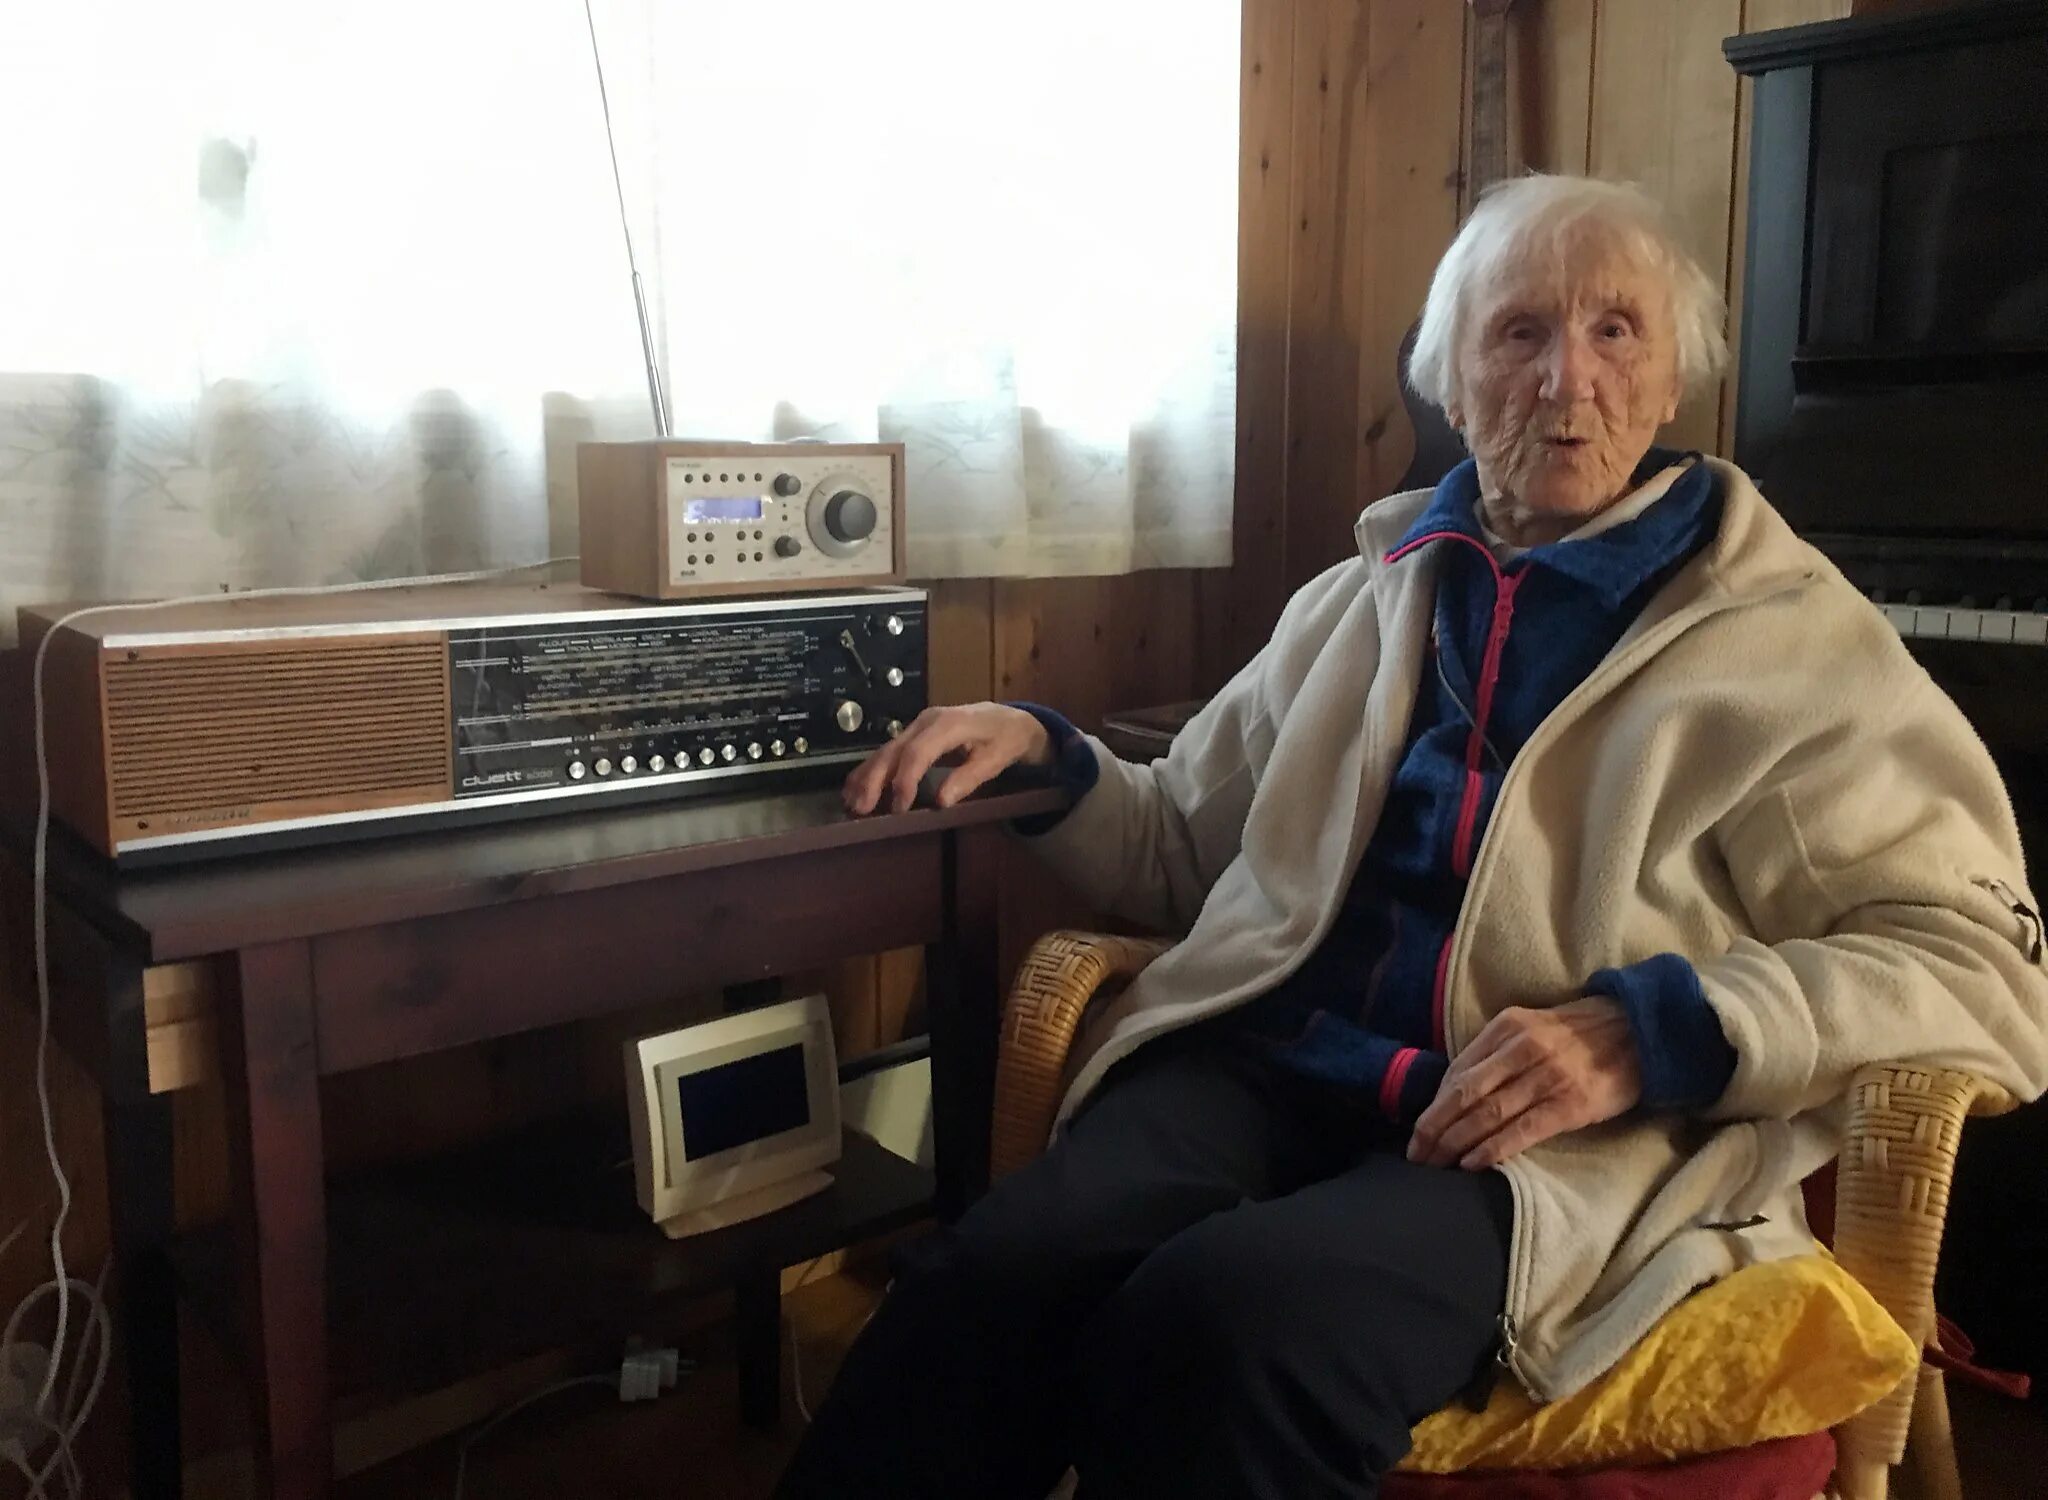 Слушать радио первого национального канала. Прослушивание радио. Бабка у радио. Человек с радиоприемником. Бабушка с радио.